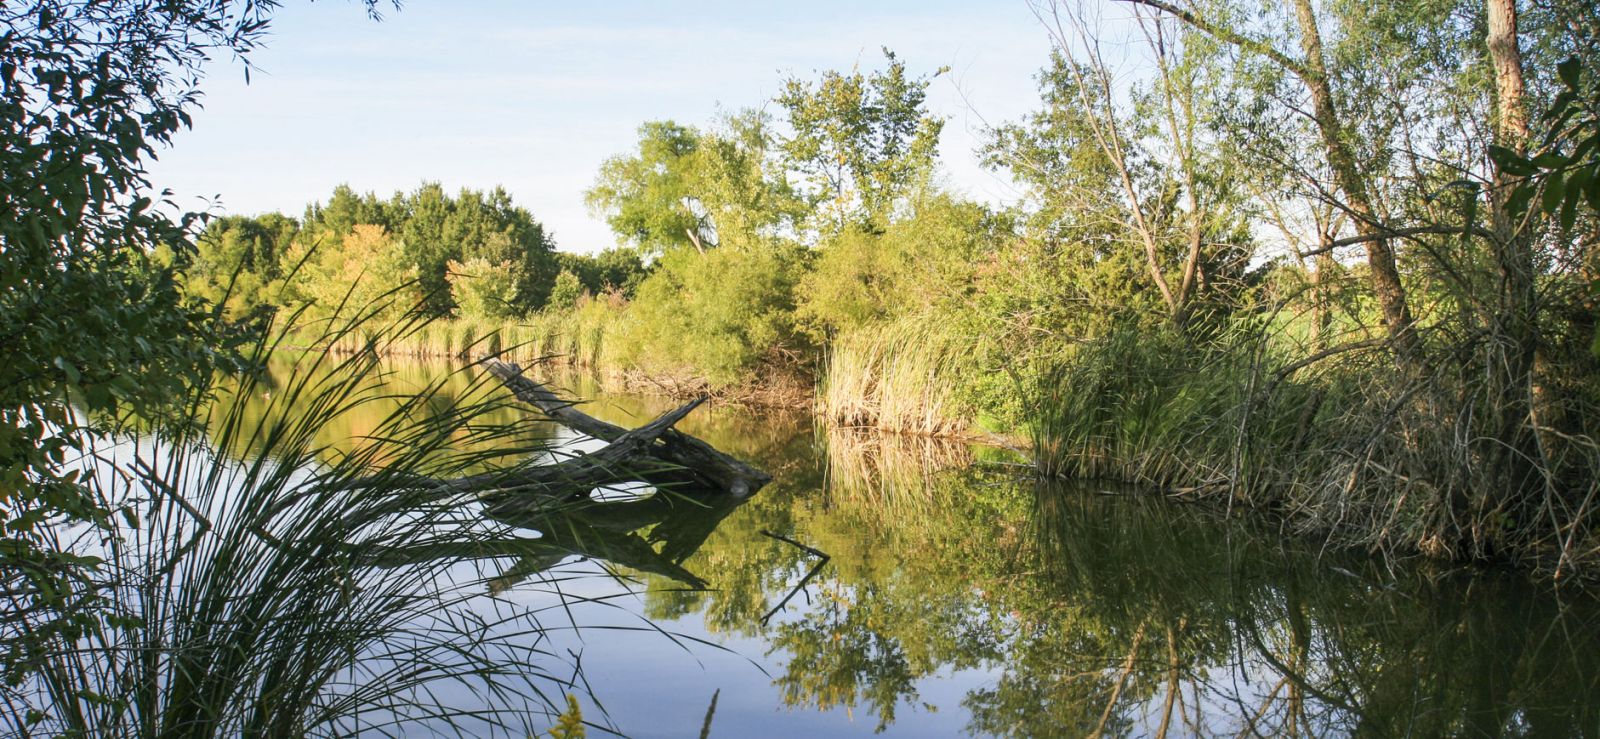 Iowa waterway with surrounding foliage